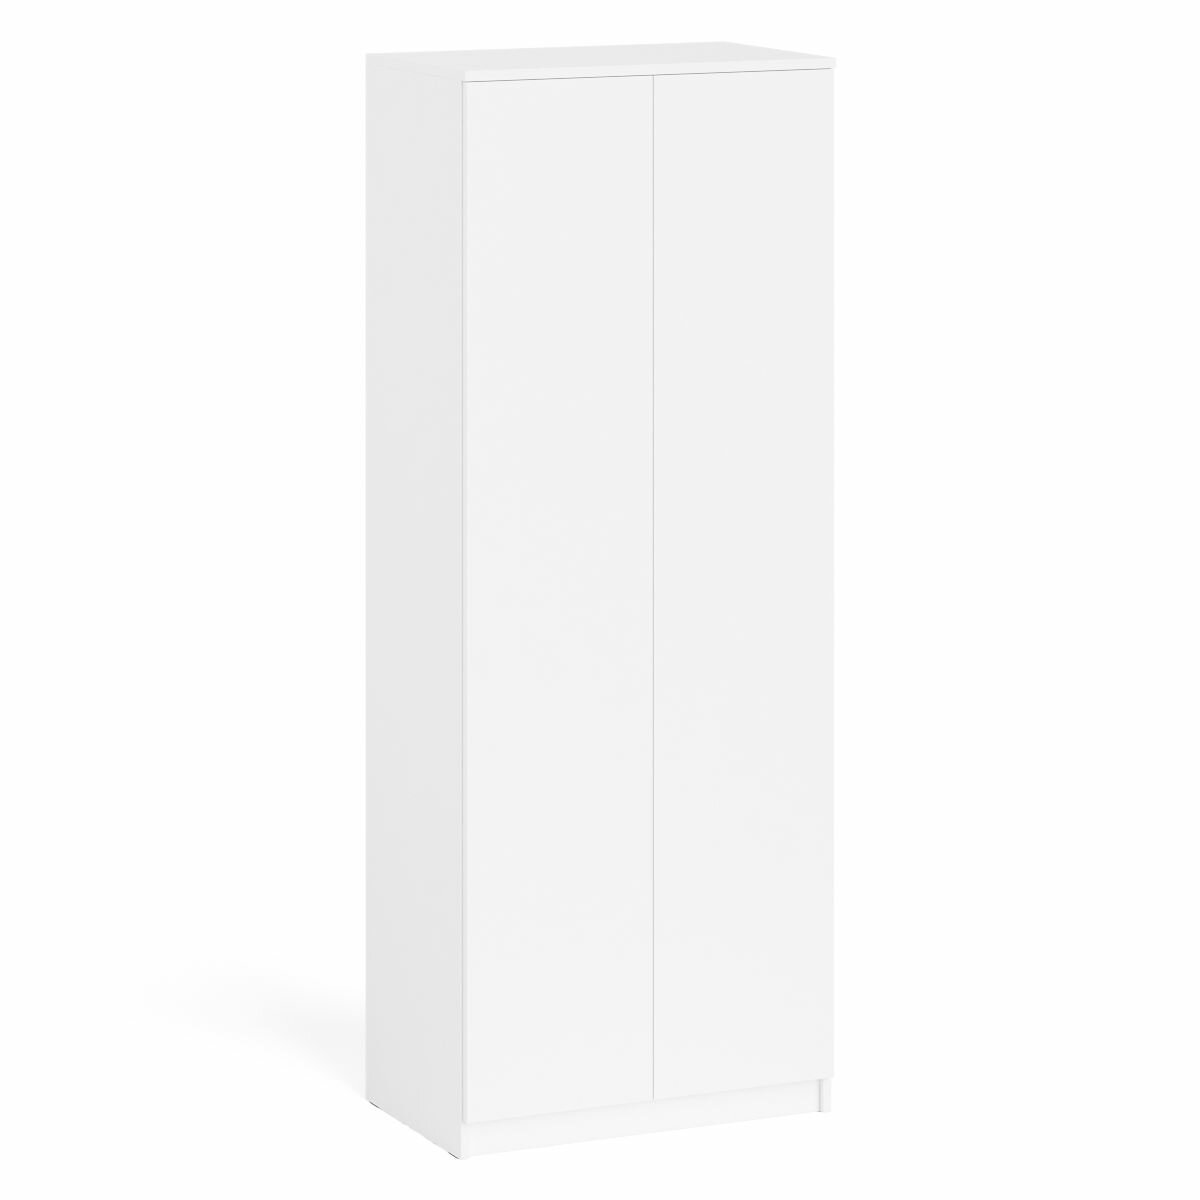 Шкаф двухдверный Мори МШ800.1 цвет белый, ШхГхВ 80,4х50,4х209,6 см